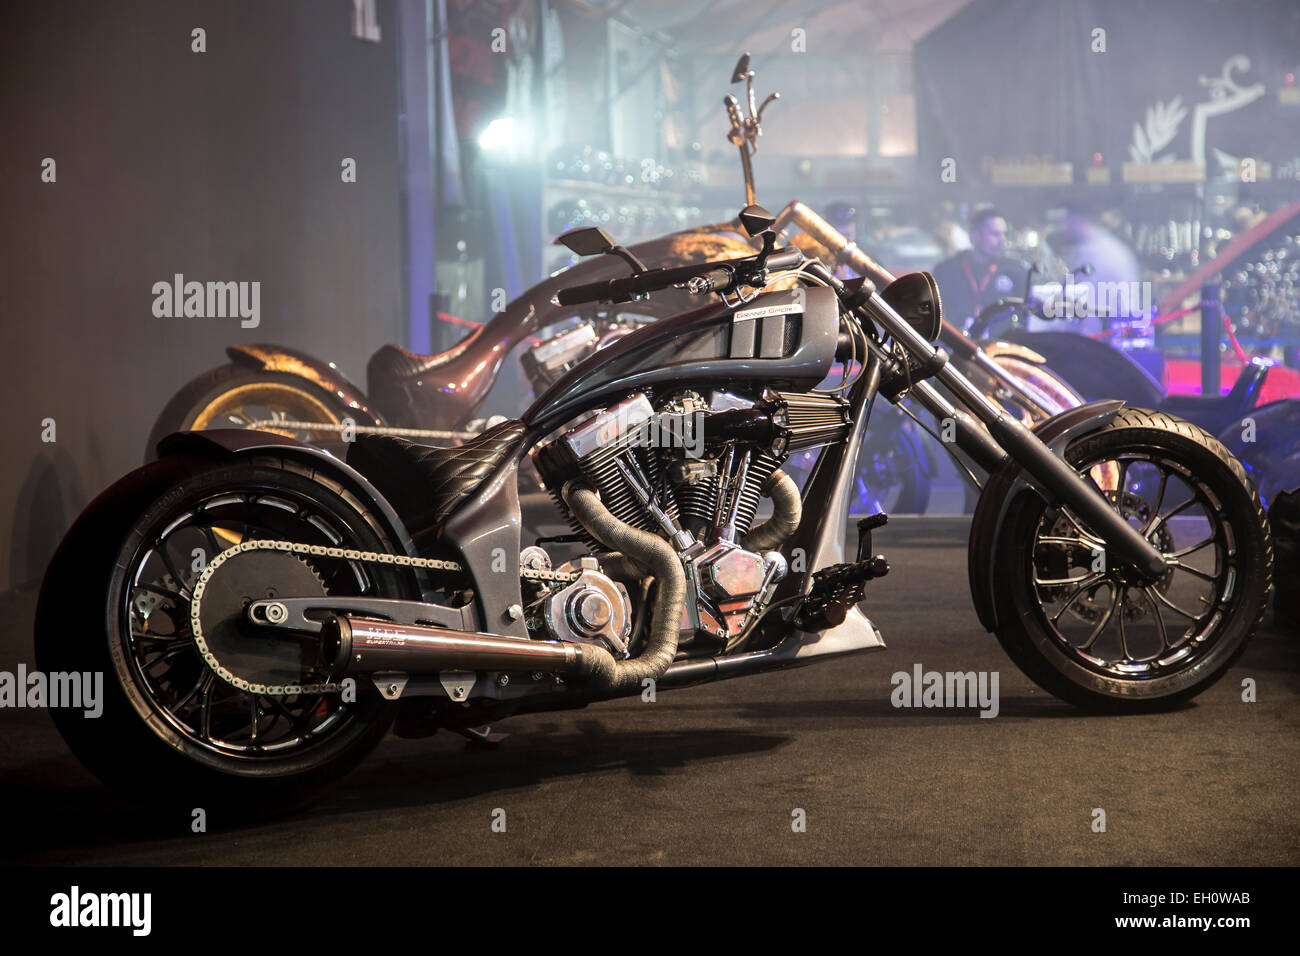 ISTANBUL, TURQUIE - 27 février 2015 : TT Grand choppers custom moto sport sur l'affichage à l'Eurasia moto expo, parc des expositions CNR. Banque D'Images